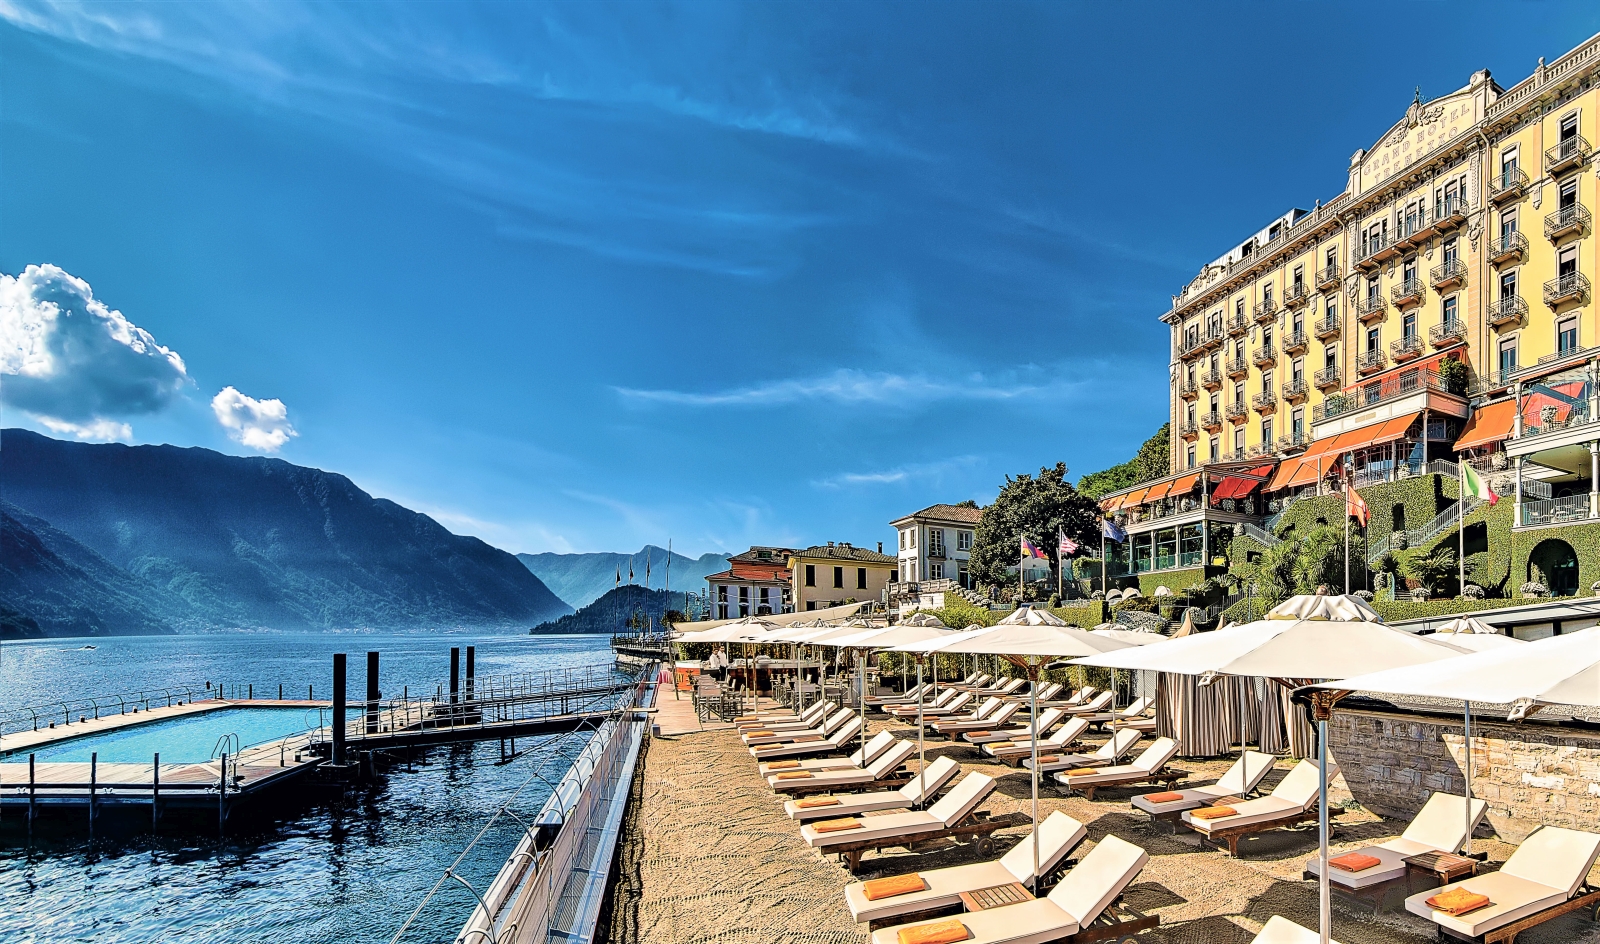 Beach at Grand Hotel Tremezzo on Lake Como in Italy